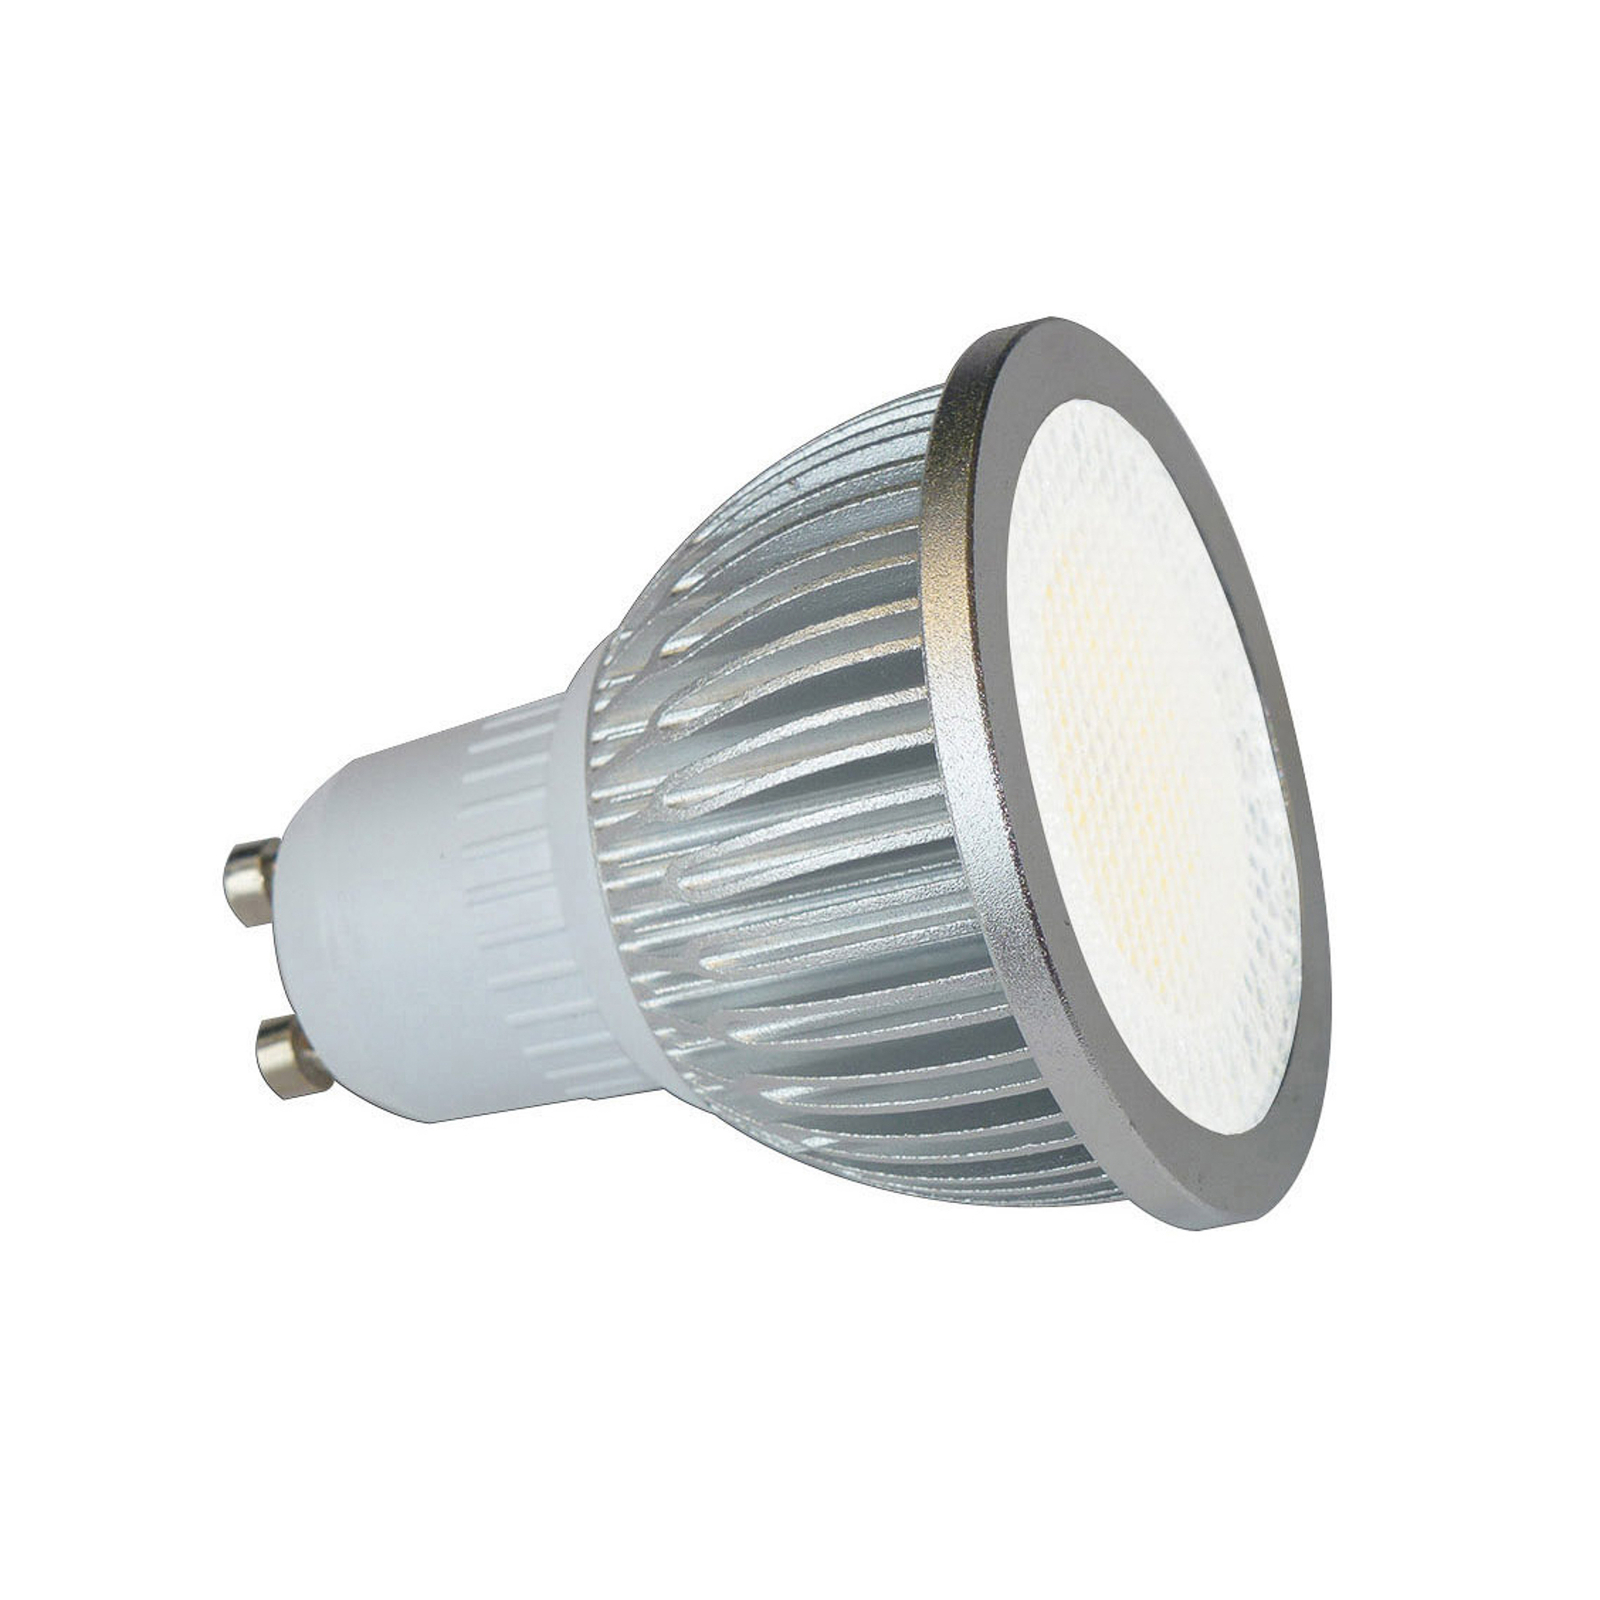 Visokonaponski LED reflektor GU10 5W 830 85° set od 3 komada